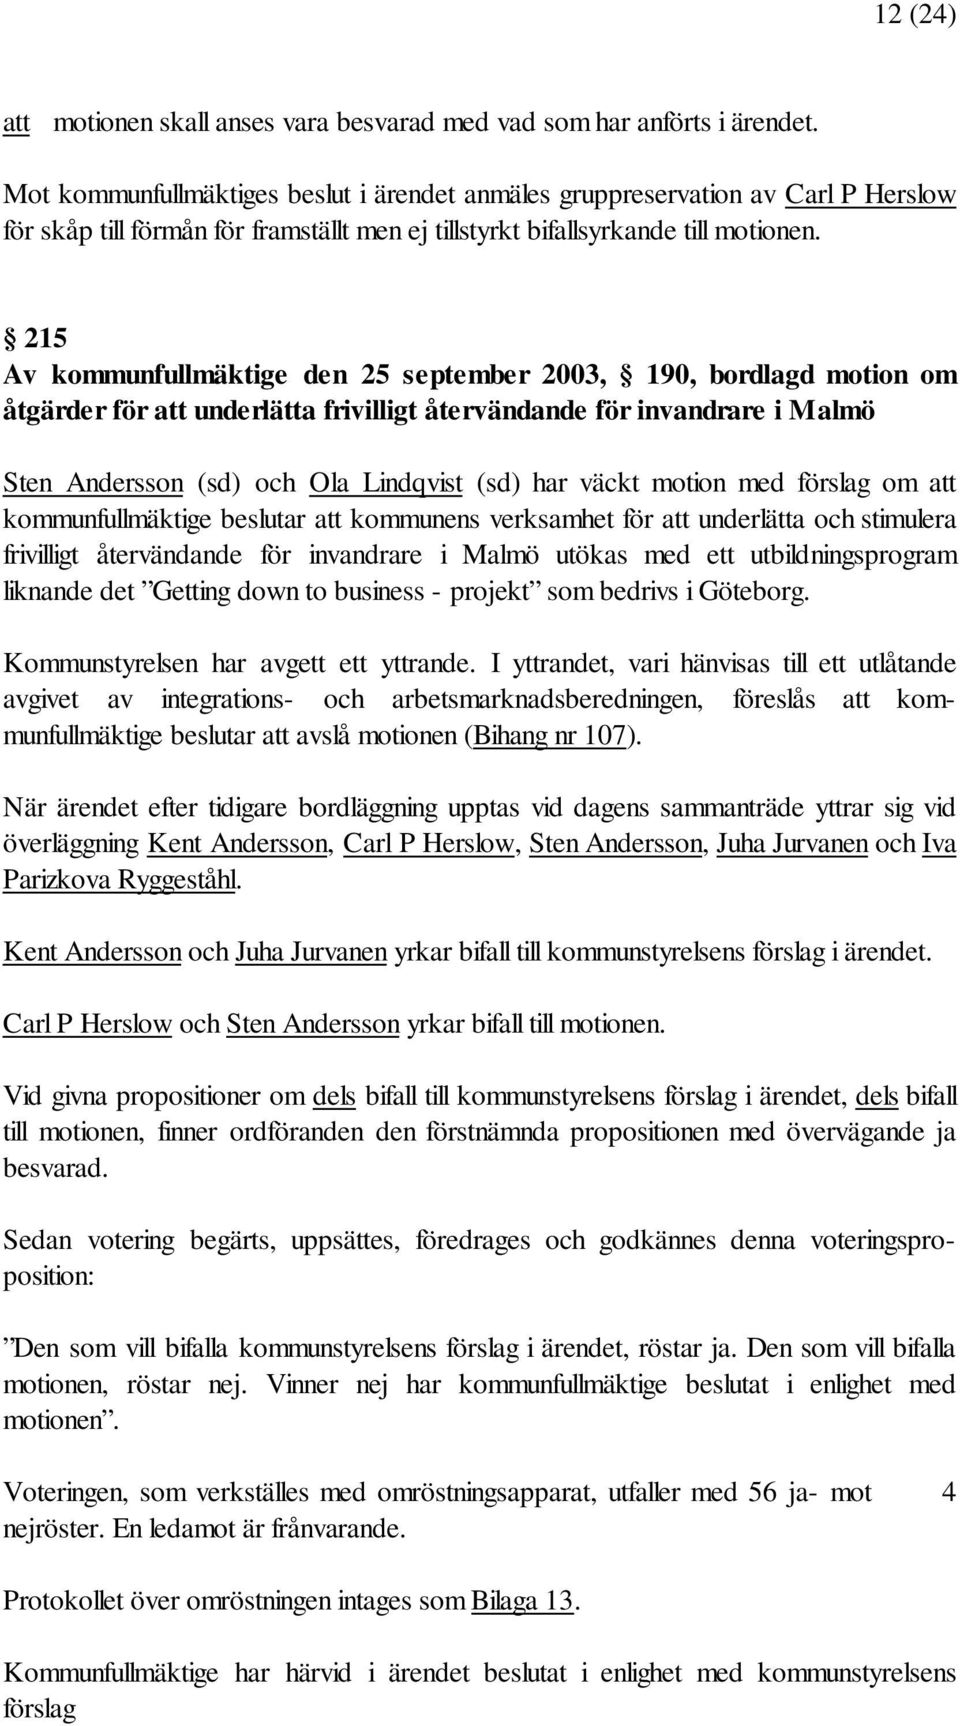 215 Av kommunfullmäktige den 25 september 2003, 190, bordlagd motion om åtgärder för att underlätta frivilligt återvändande för invandrare i Malmö Sten Andersson (sd) och Ola Lindqvist (sd) har väckt